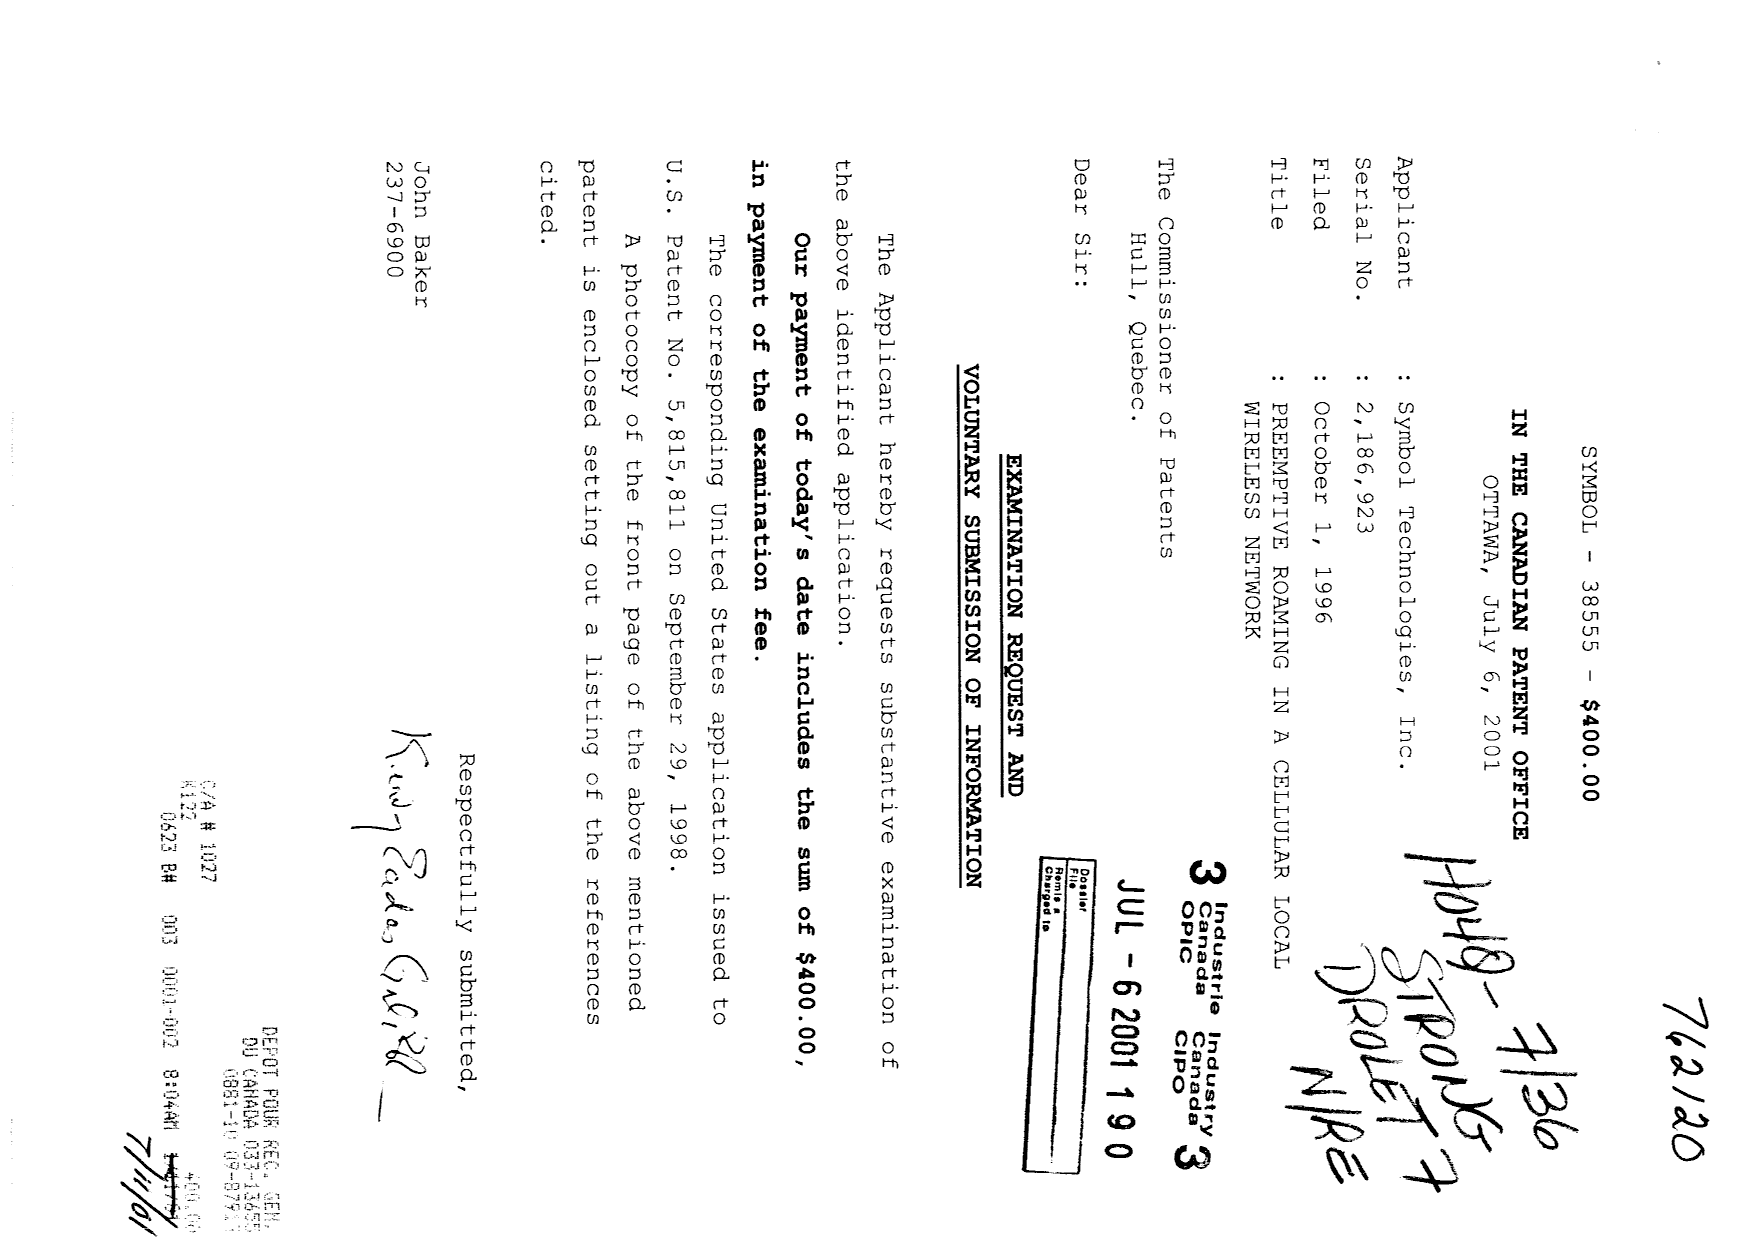 Document de brevet canadien 2186923. Poursuite-Amendment 20010706. Image 1 de 1